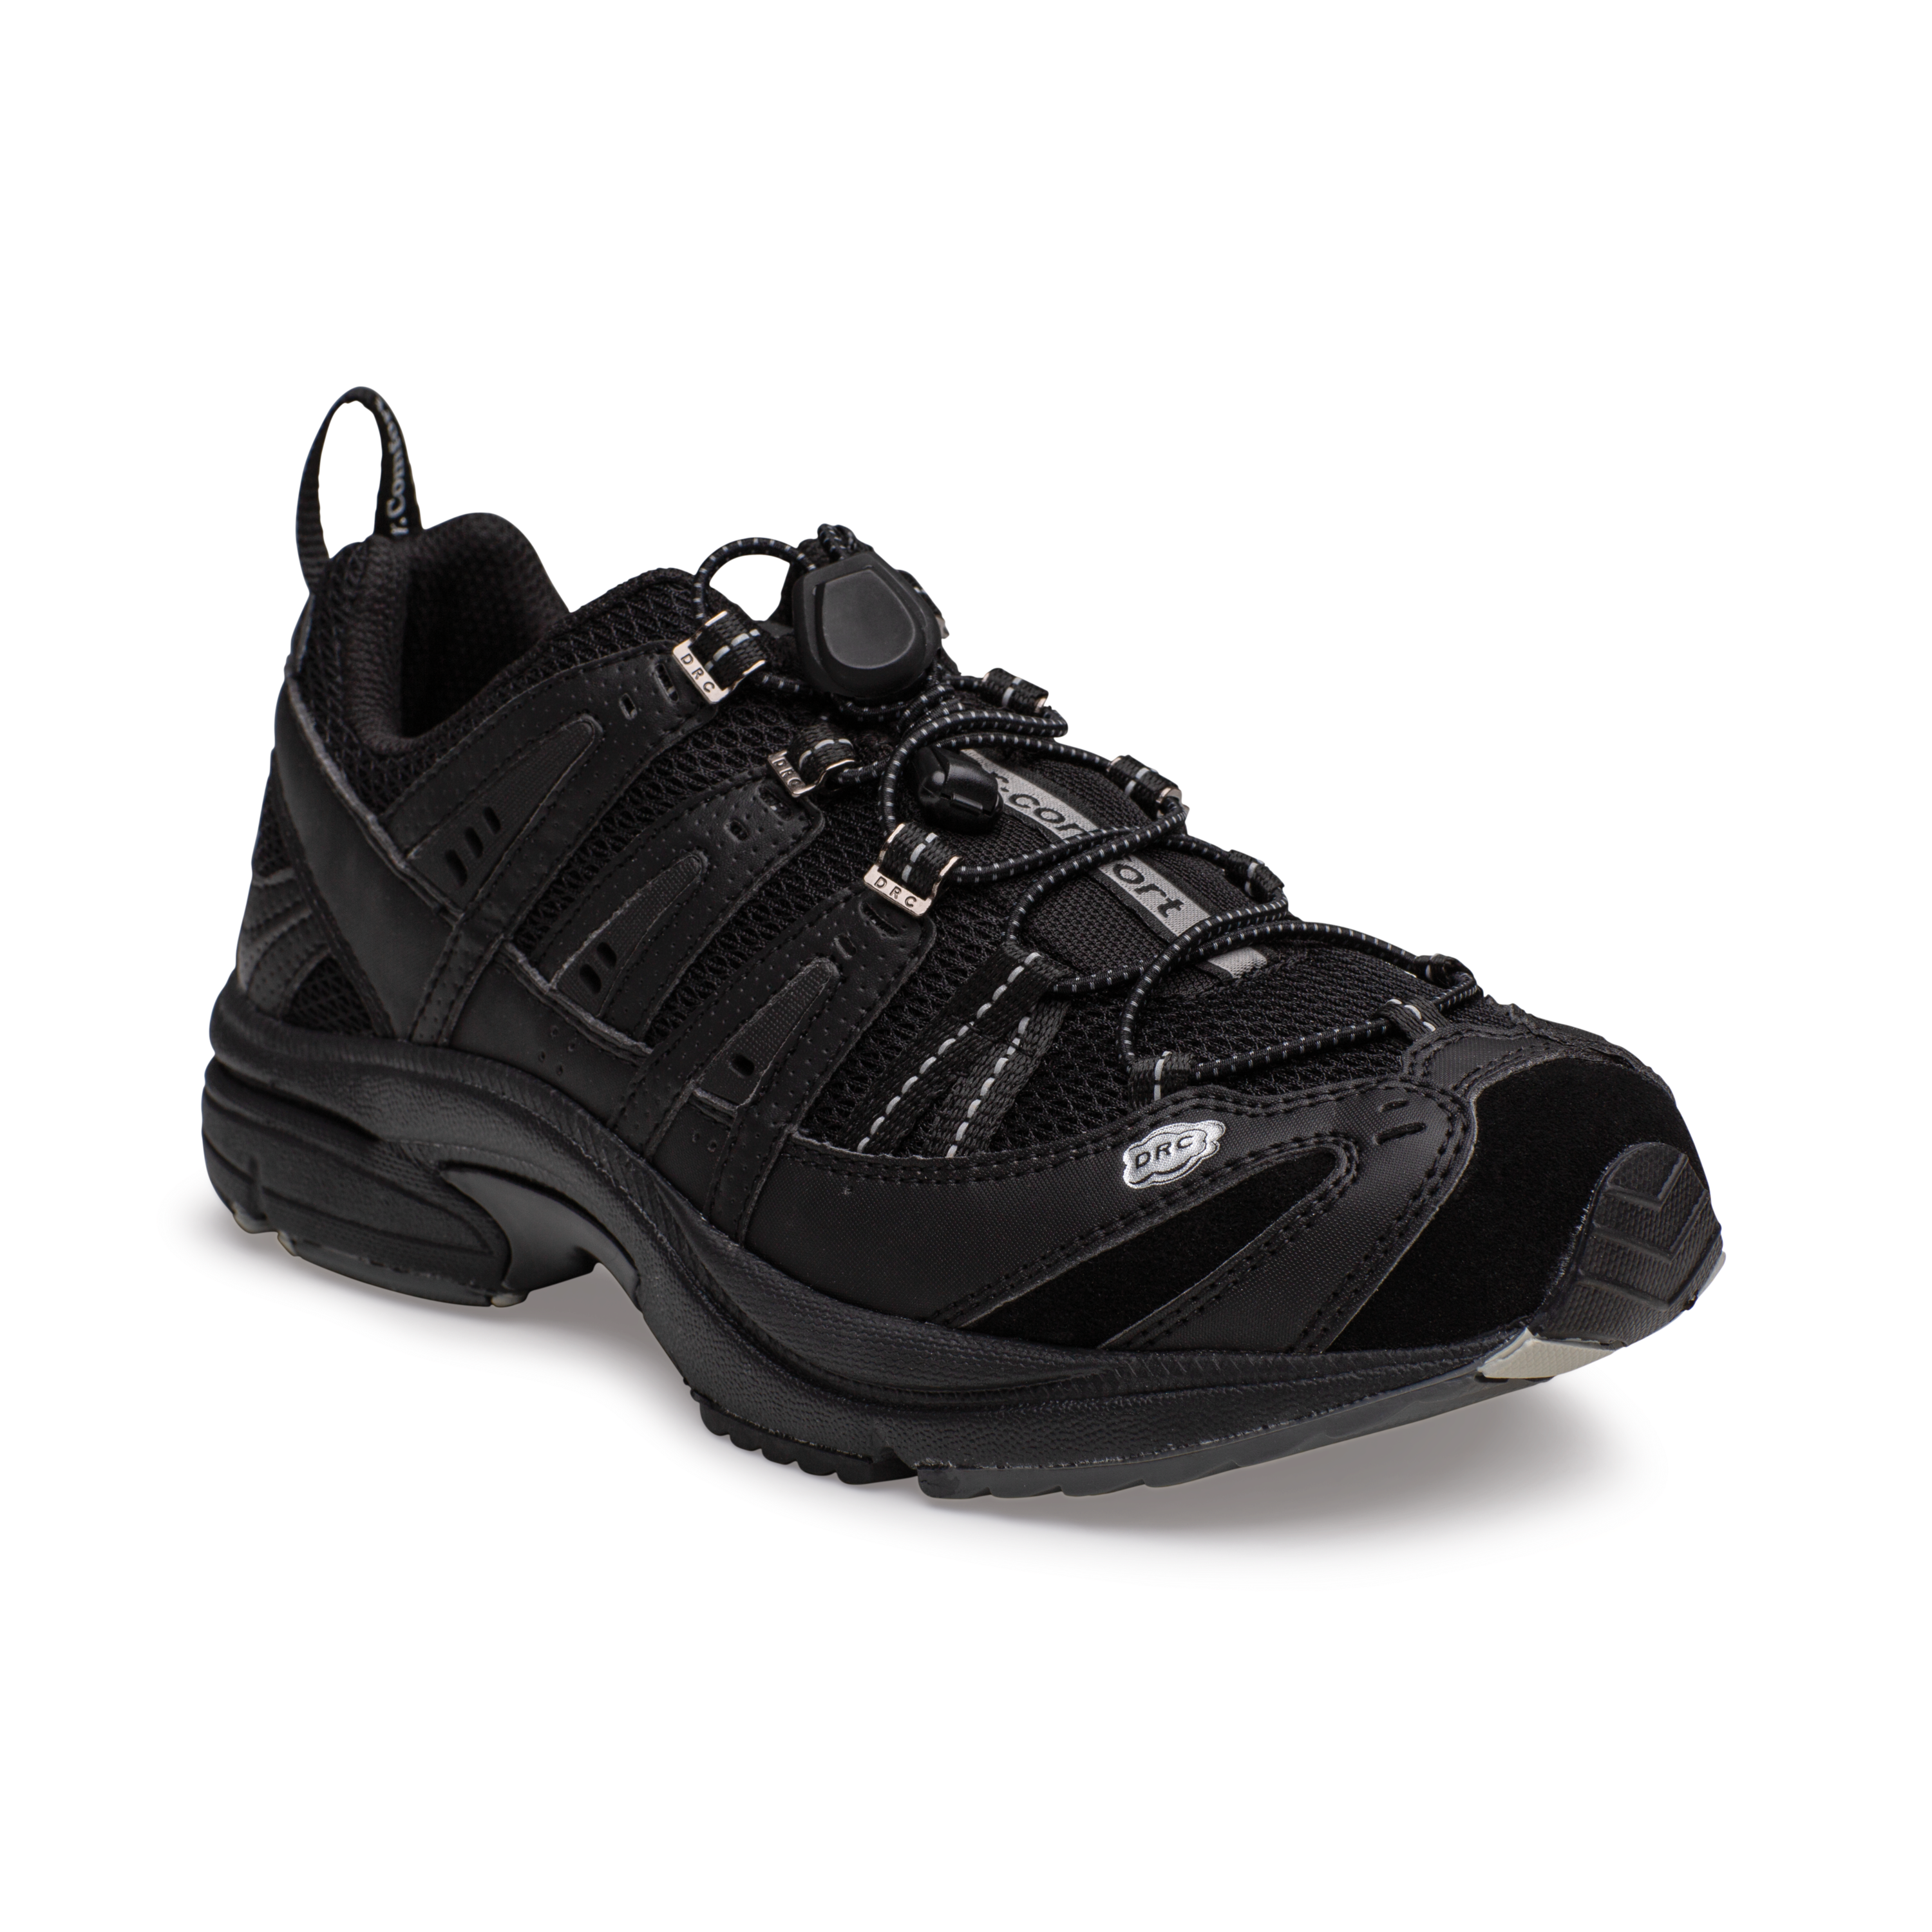 Produktbild DR. COMFORT® Performance schwarz, Orthopädische Schuhe, Ideal für den aktiven Mann. Leichter und komfortabler Freizeitschuh